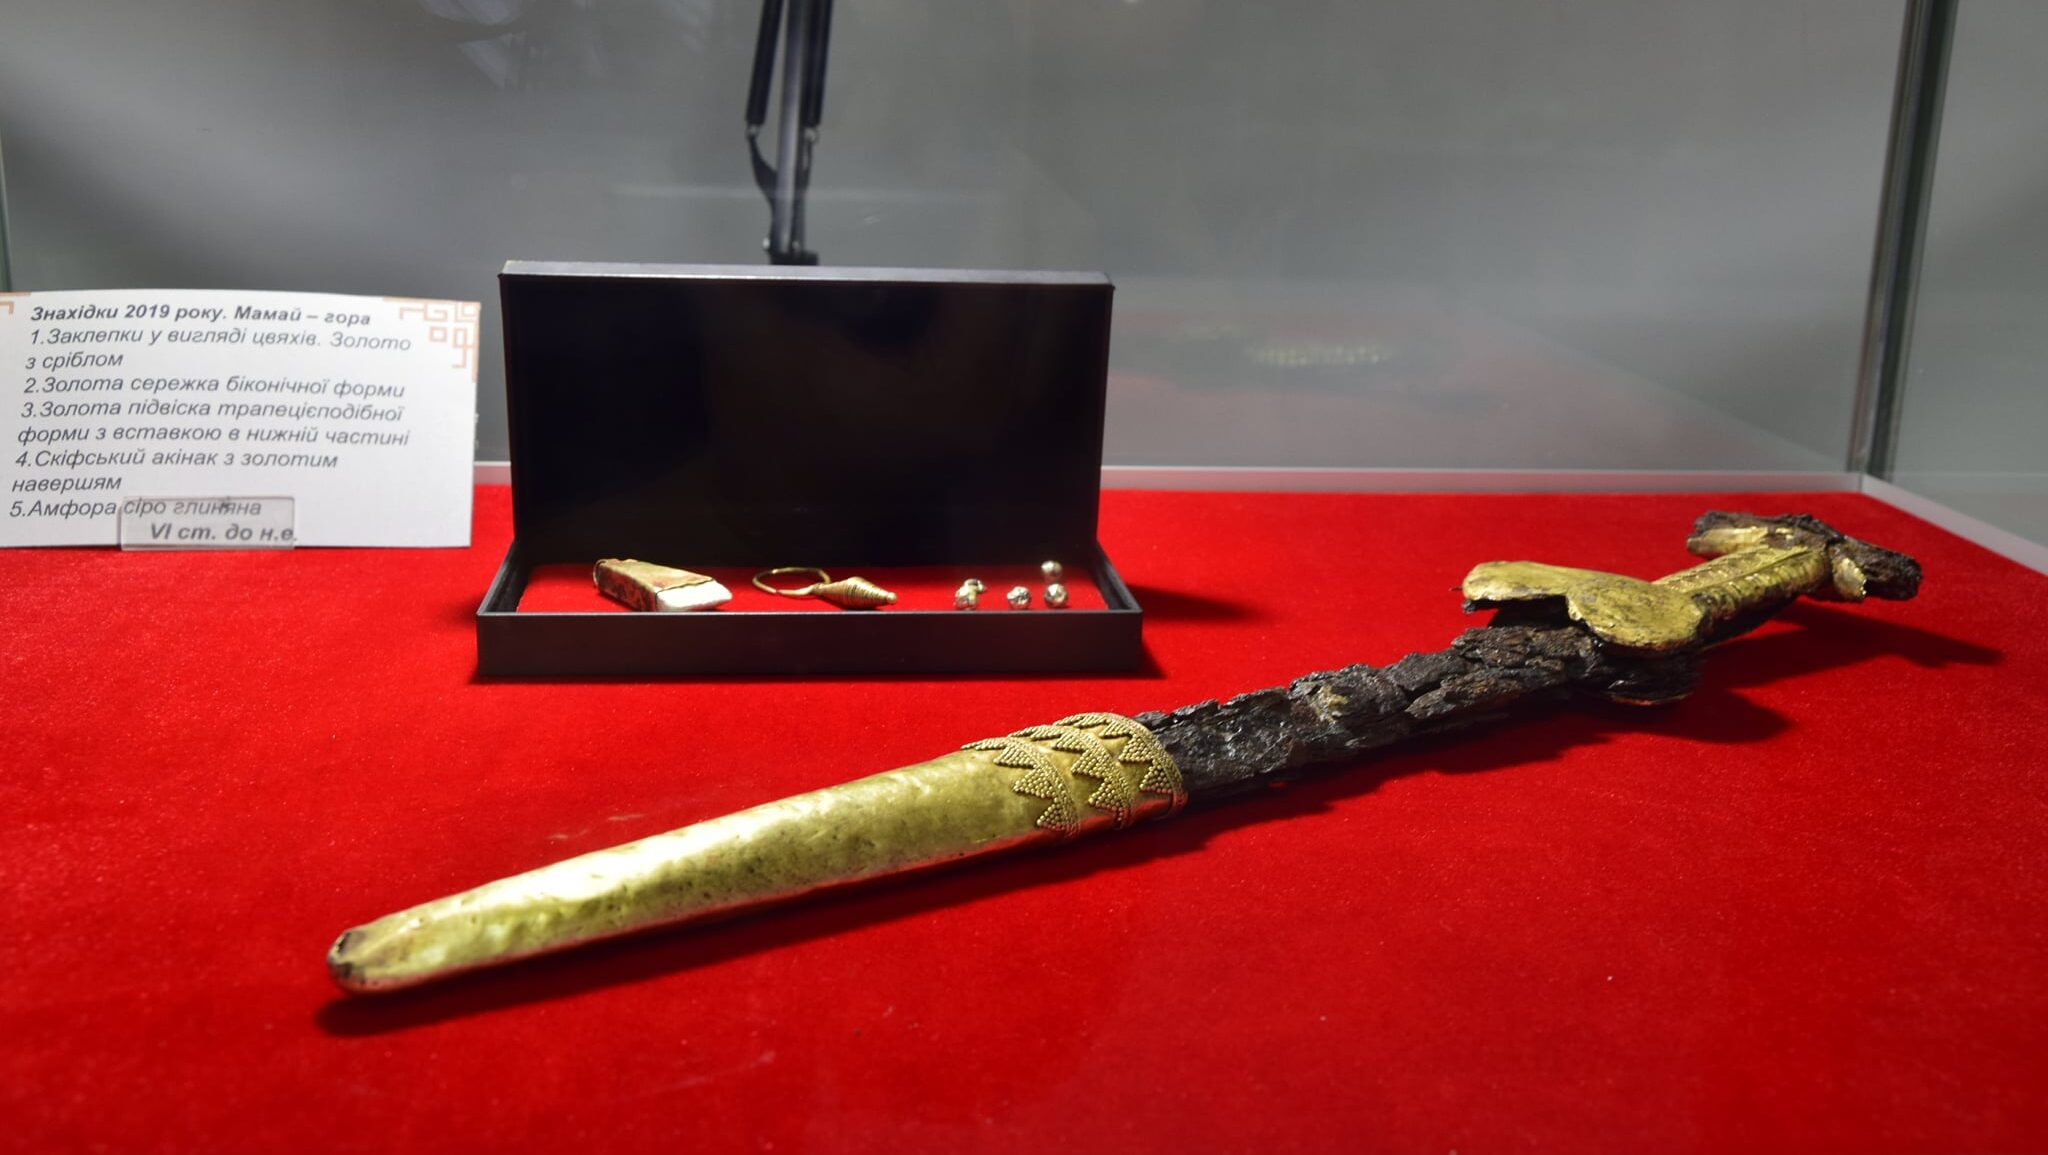 В музее в Запорожской области впервые показали скифский меч, найденный на Мамай-горе, – ФОТО